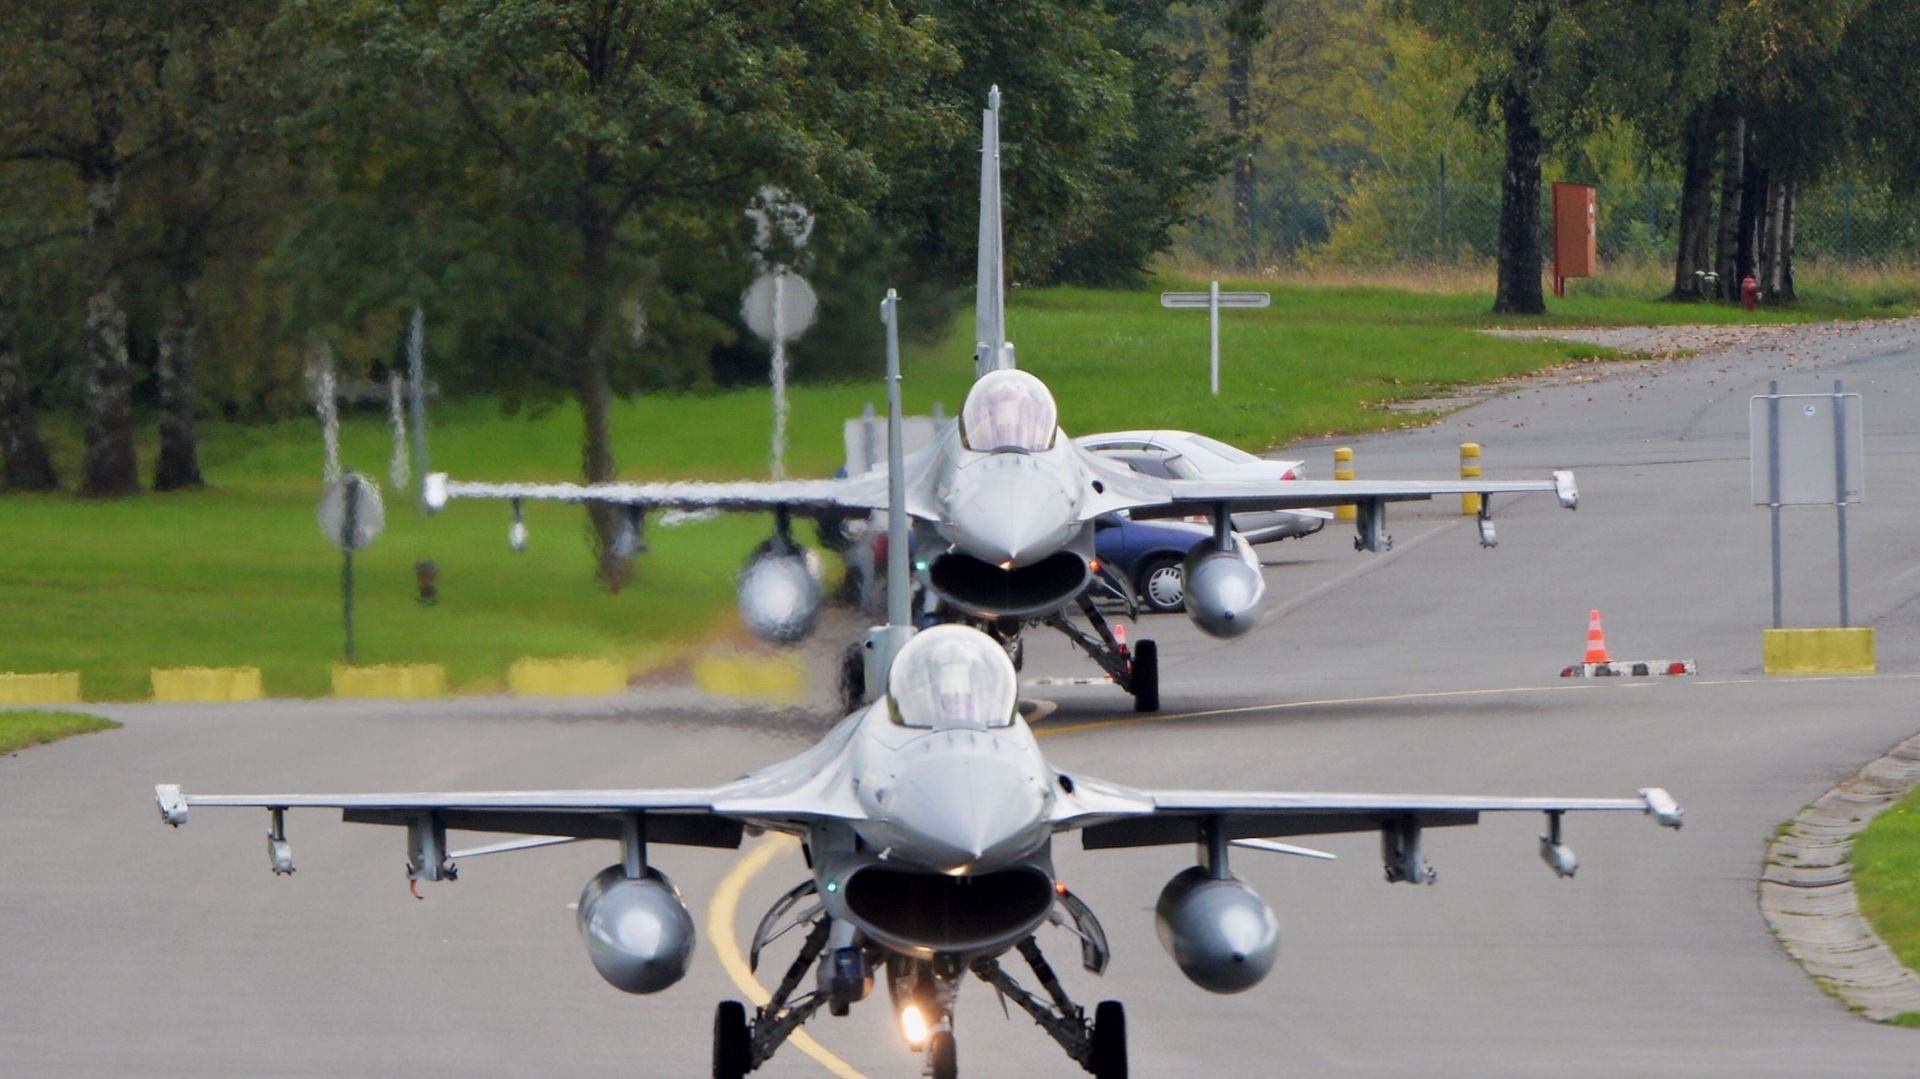 Des F16 belges ont été envoyés en Irak en renfort de la coalition internationale contre le groupe terroriste Etat islamique. Ces appareils ont été photographiés le 26 septembre à Florennes lors de leur décollage pour leur base de Jordanie.